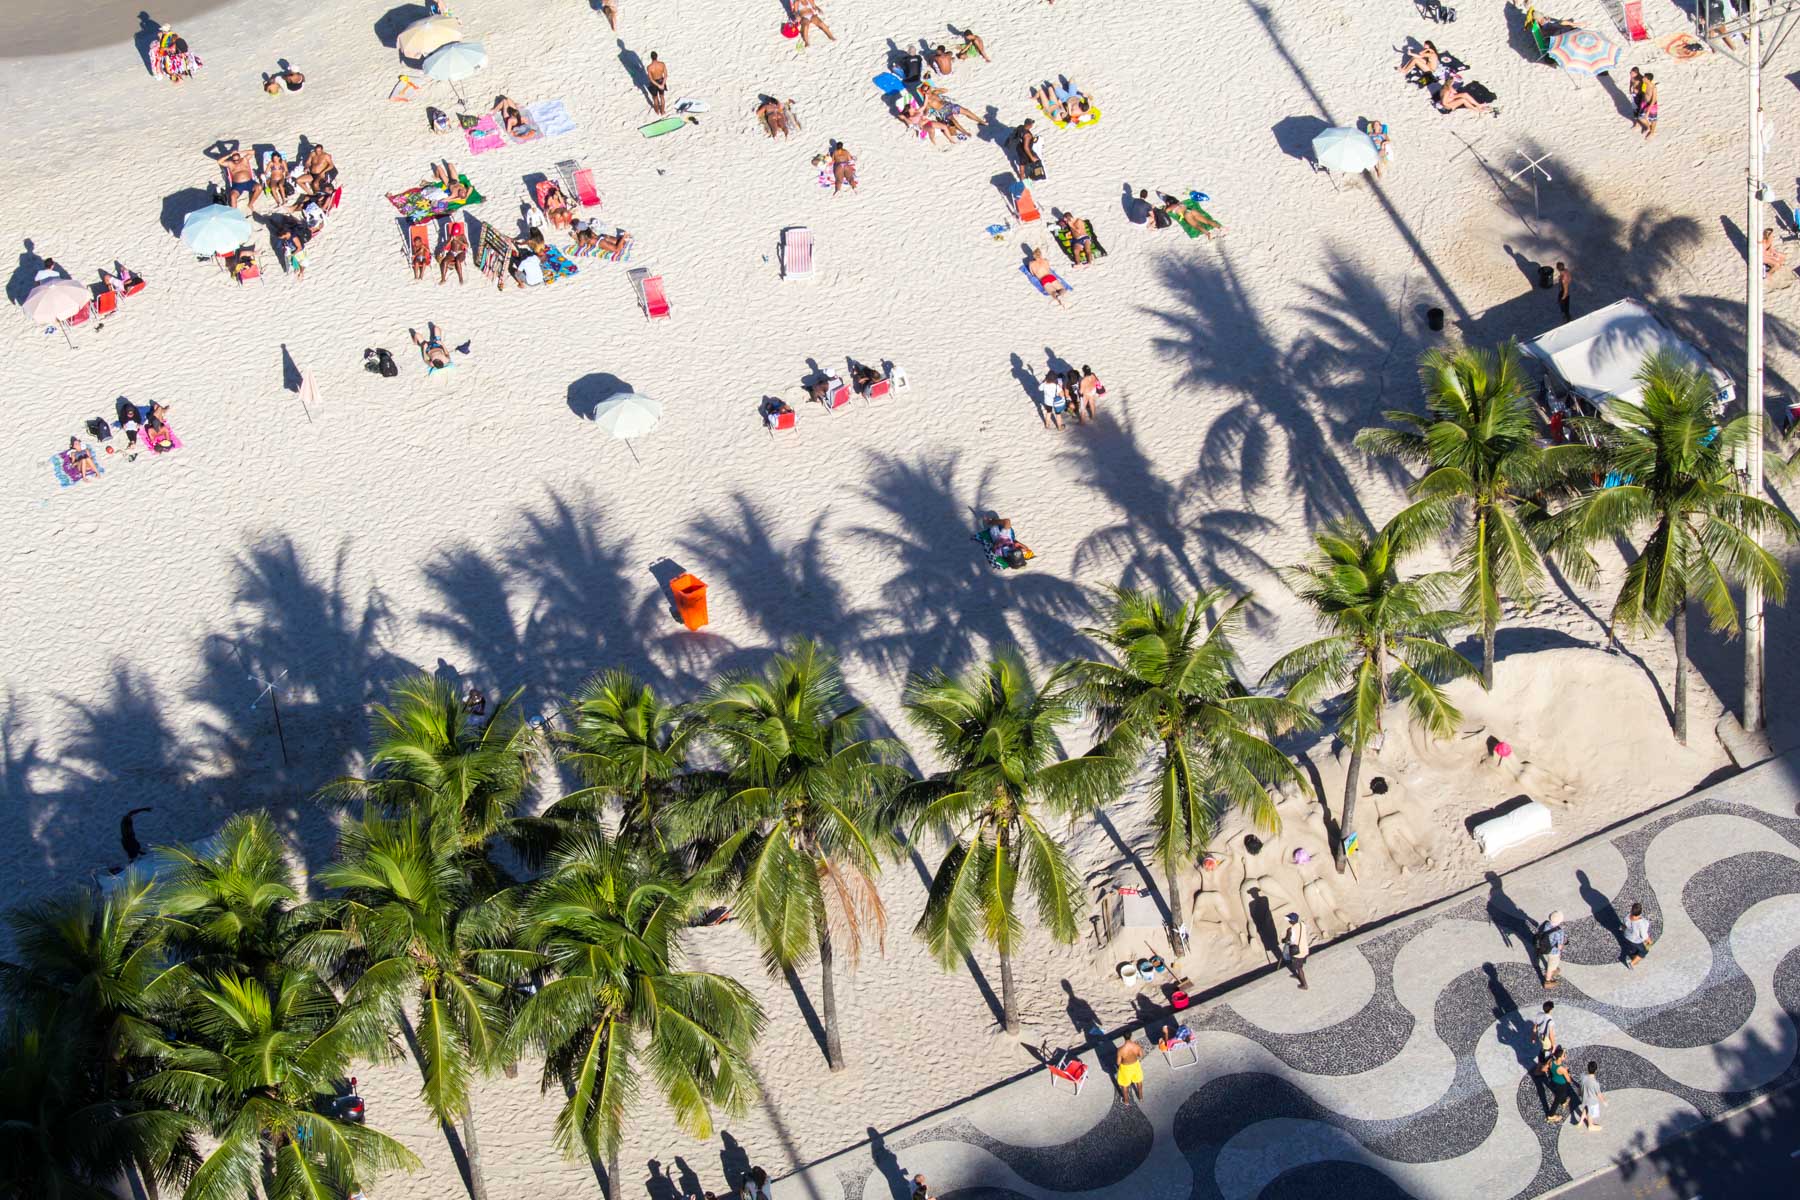 De nombreuses personnes se prélassent sur le sable chaud près de l’ombre des palmiers de cette promenade aux pavés onduleux.